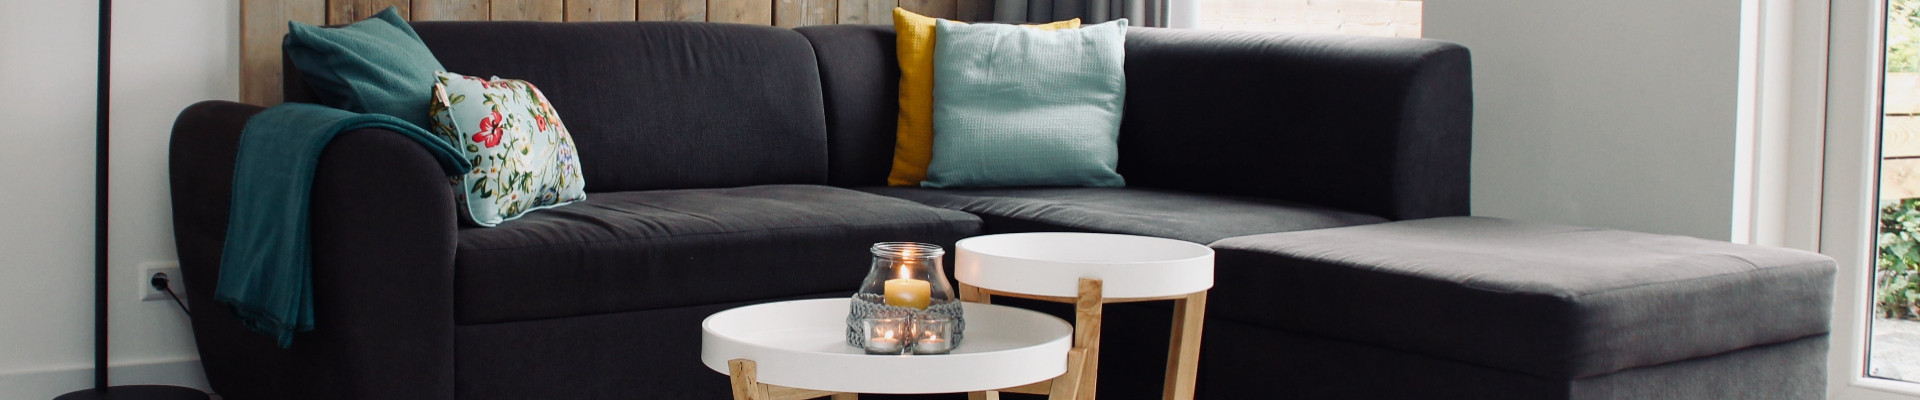 Oleme mööblitootja, kes viib mööblitootmise uuele tasemele, pakkudes kvaliteetset ja tänapäevast mööblit, mis ühendab funktsionaalsuse, nutikuse ja disaini.